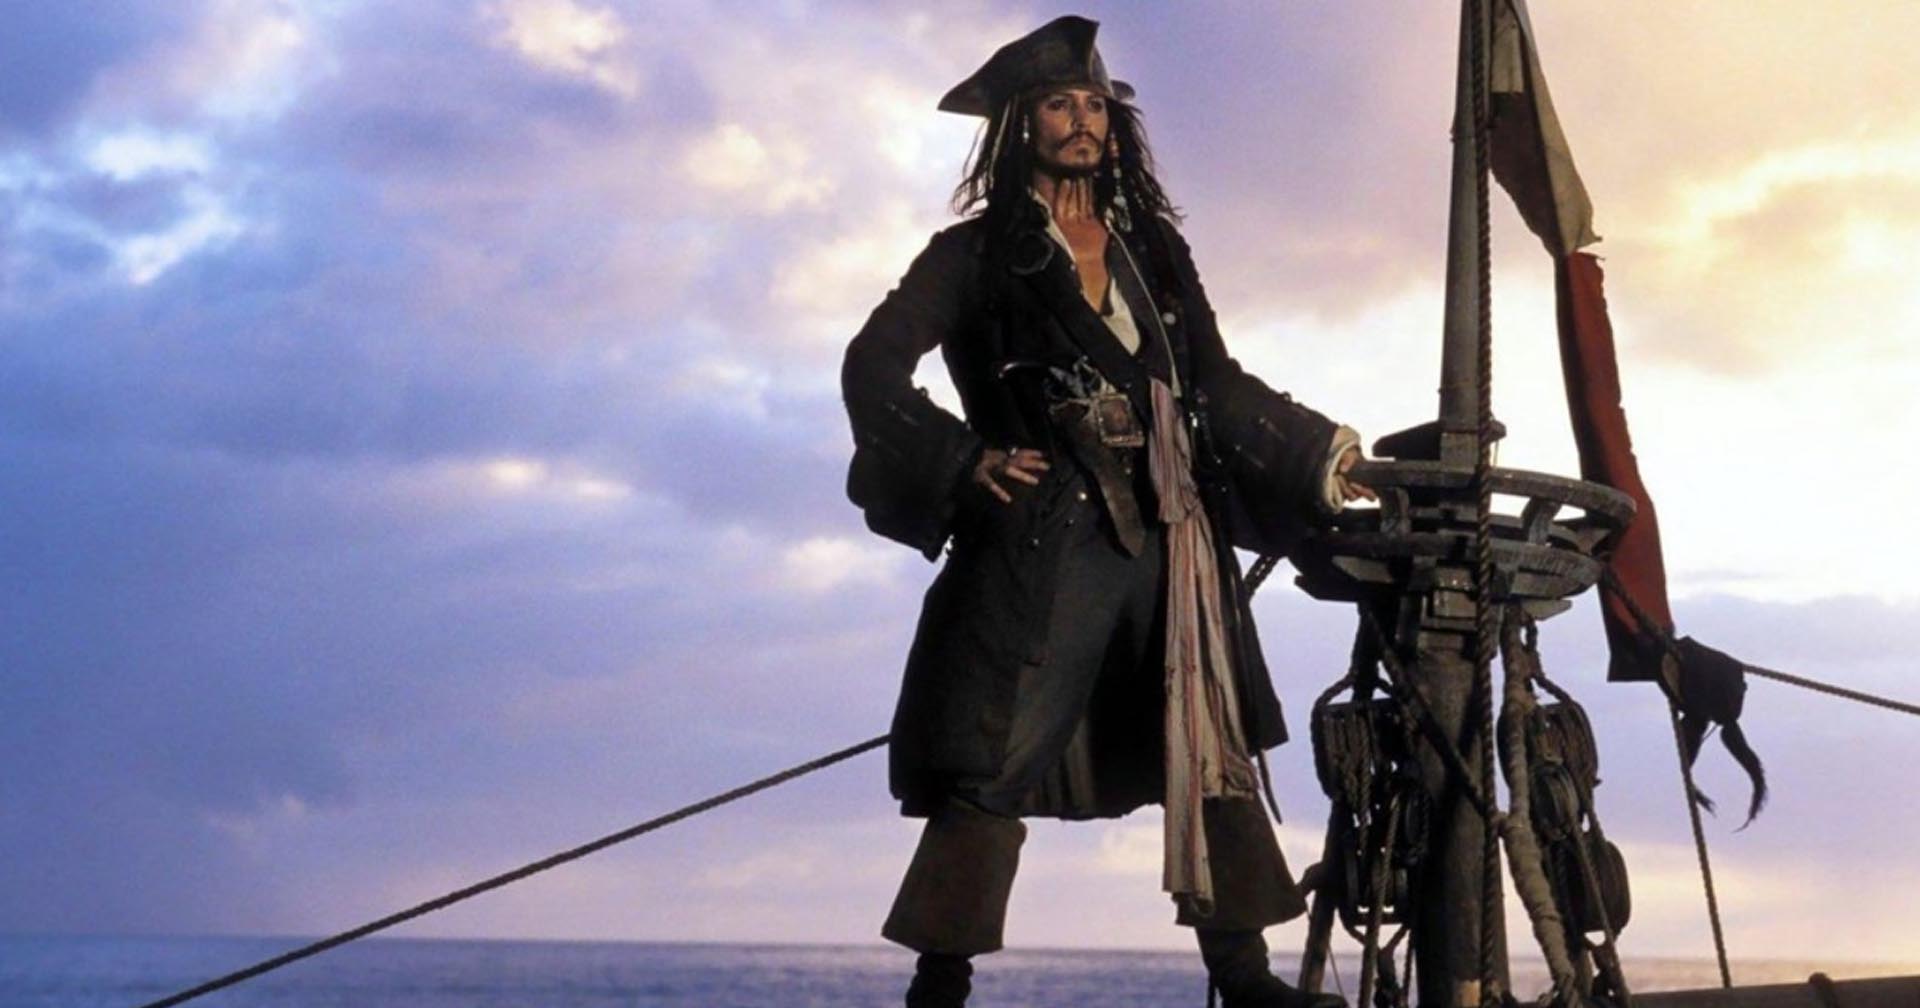 ดิสนีย์แลนด์ฉายภาพ Johnny Depp ในบท Jack Sparrow บนปราสาทระหว่างการแสดงแสงสีเสียง